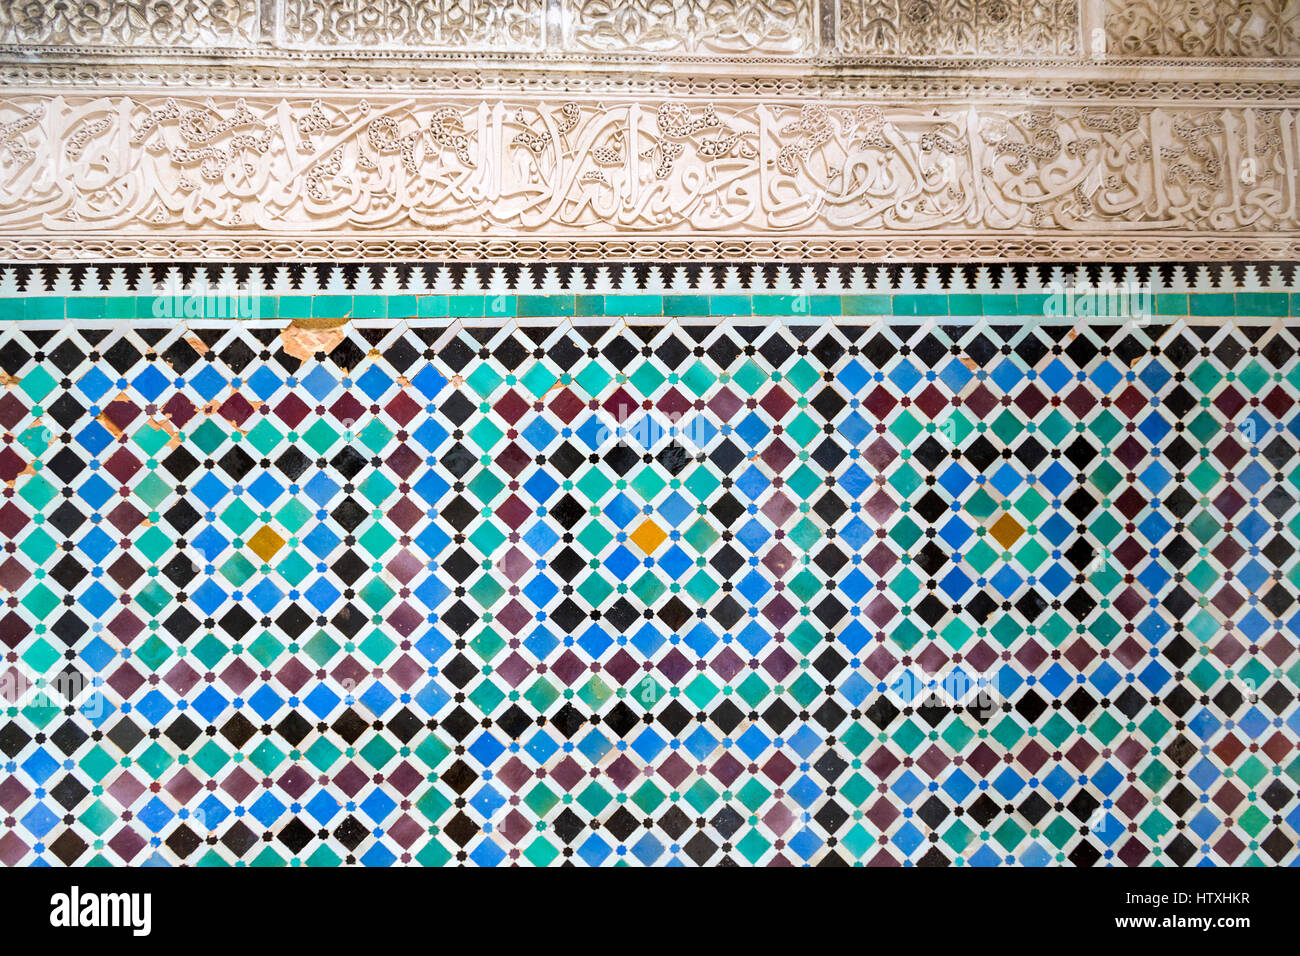 Fes, Marocco. Medersa Attarine, 14th. Secolo. La calligrafia Araba in stucco, piastrelle decorative sottostanti. Foto Stock